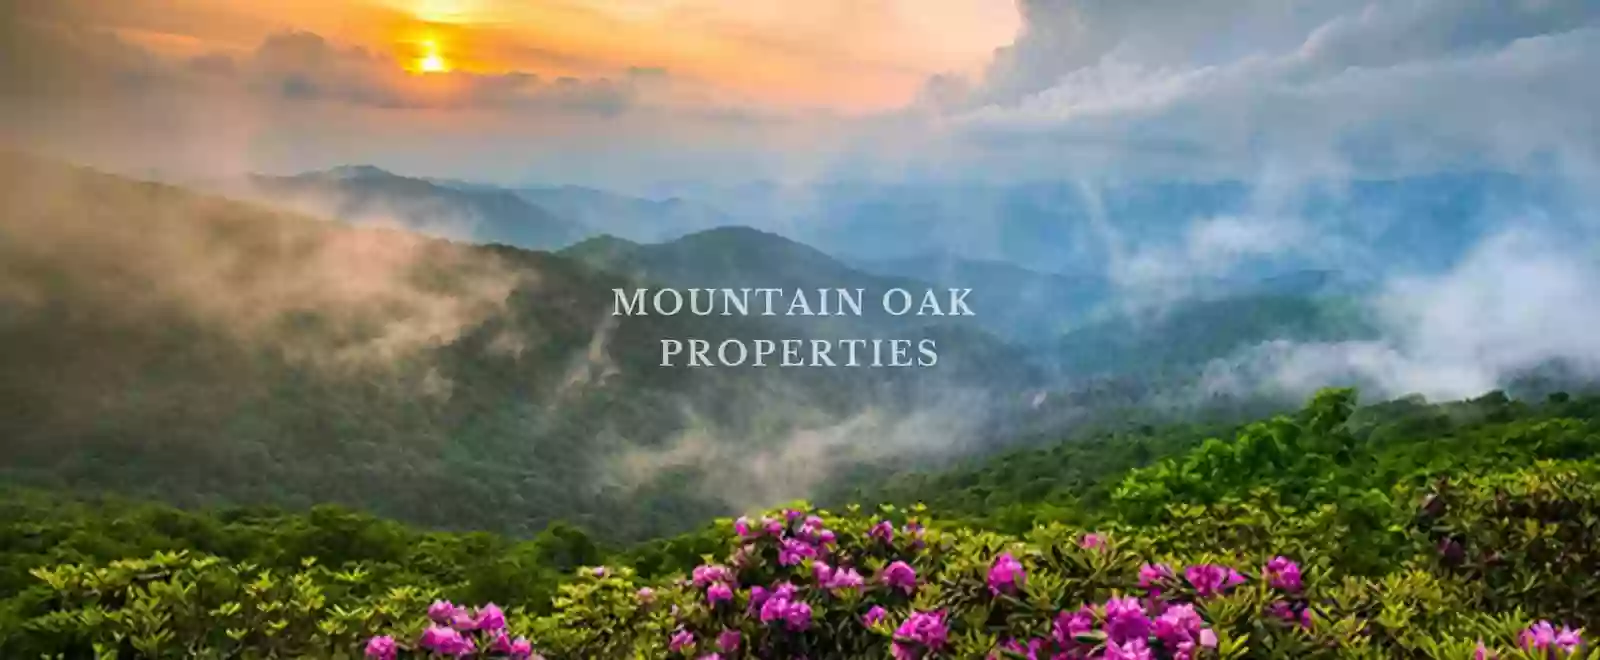 Mountain Oak Properties, LLC